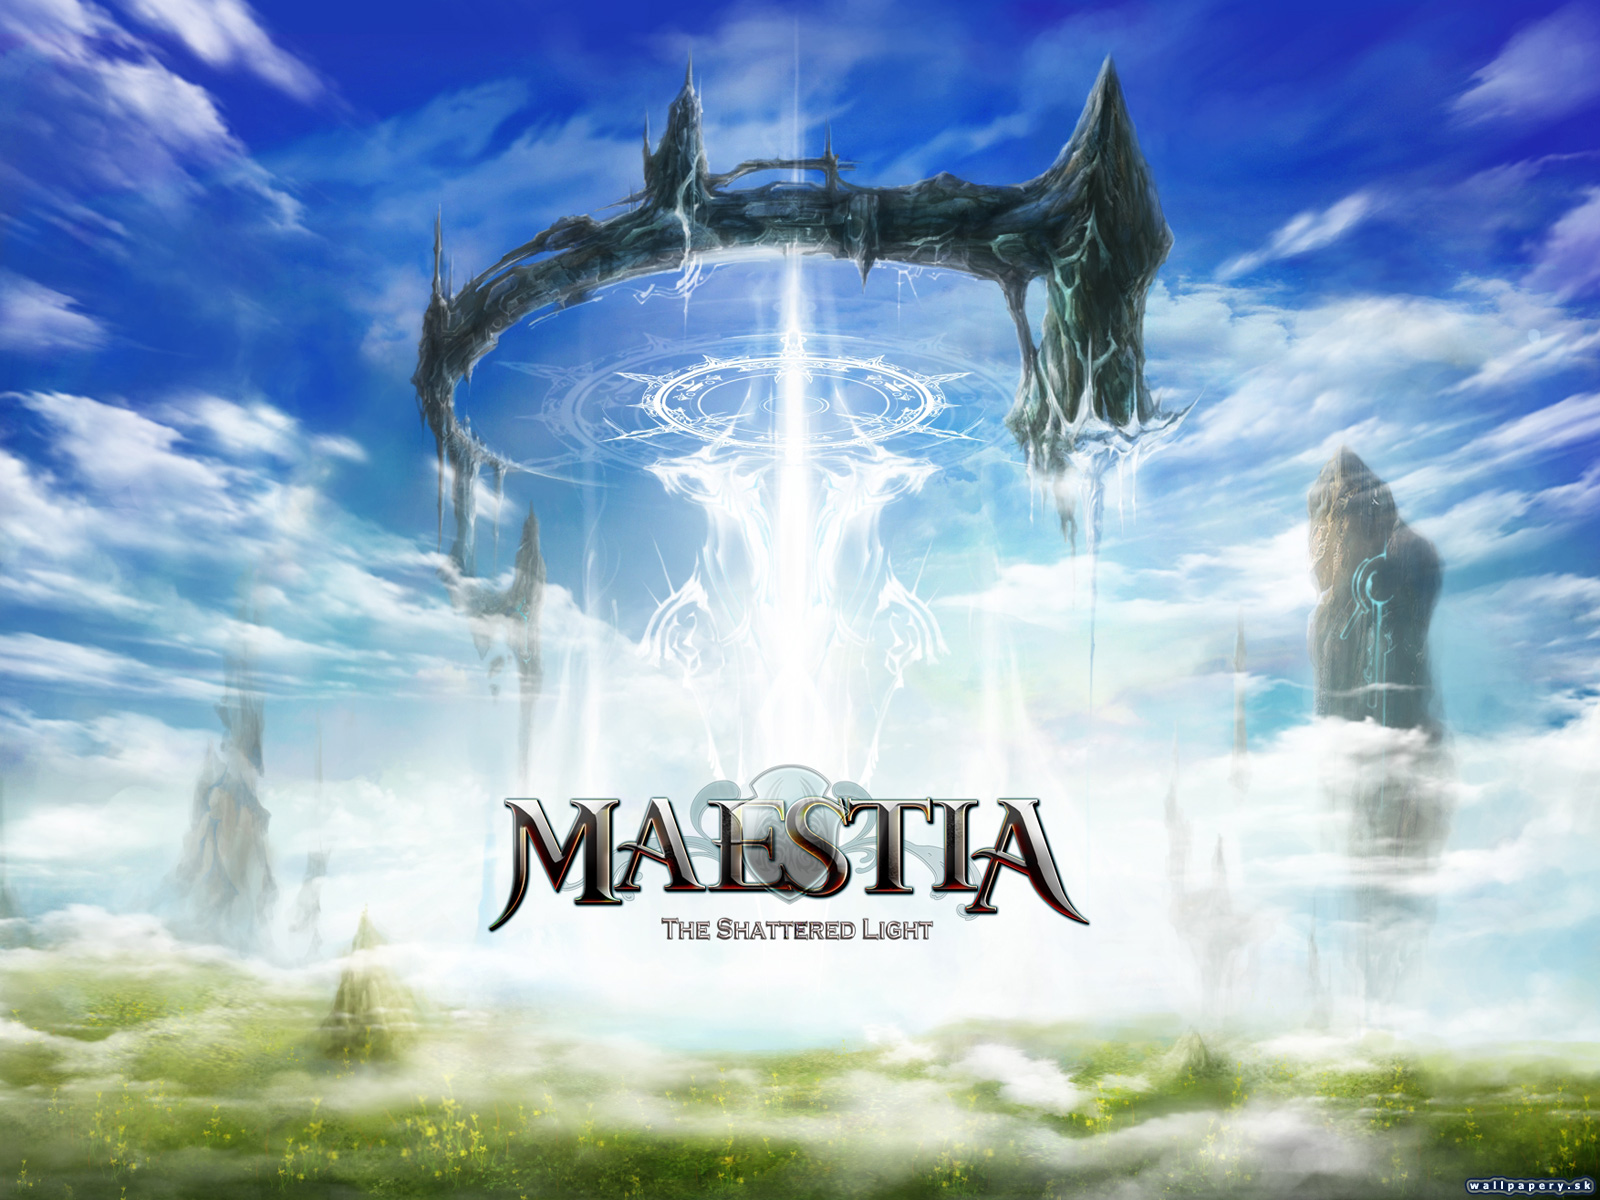 Maestia: The Shattered Light - wallpaper 4